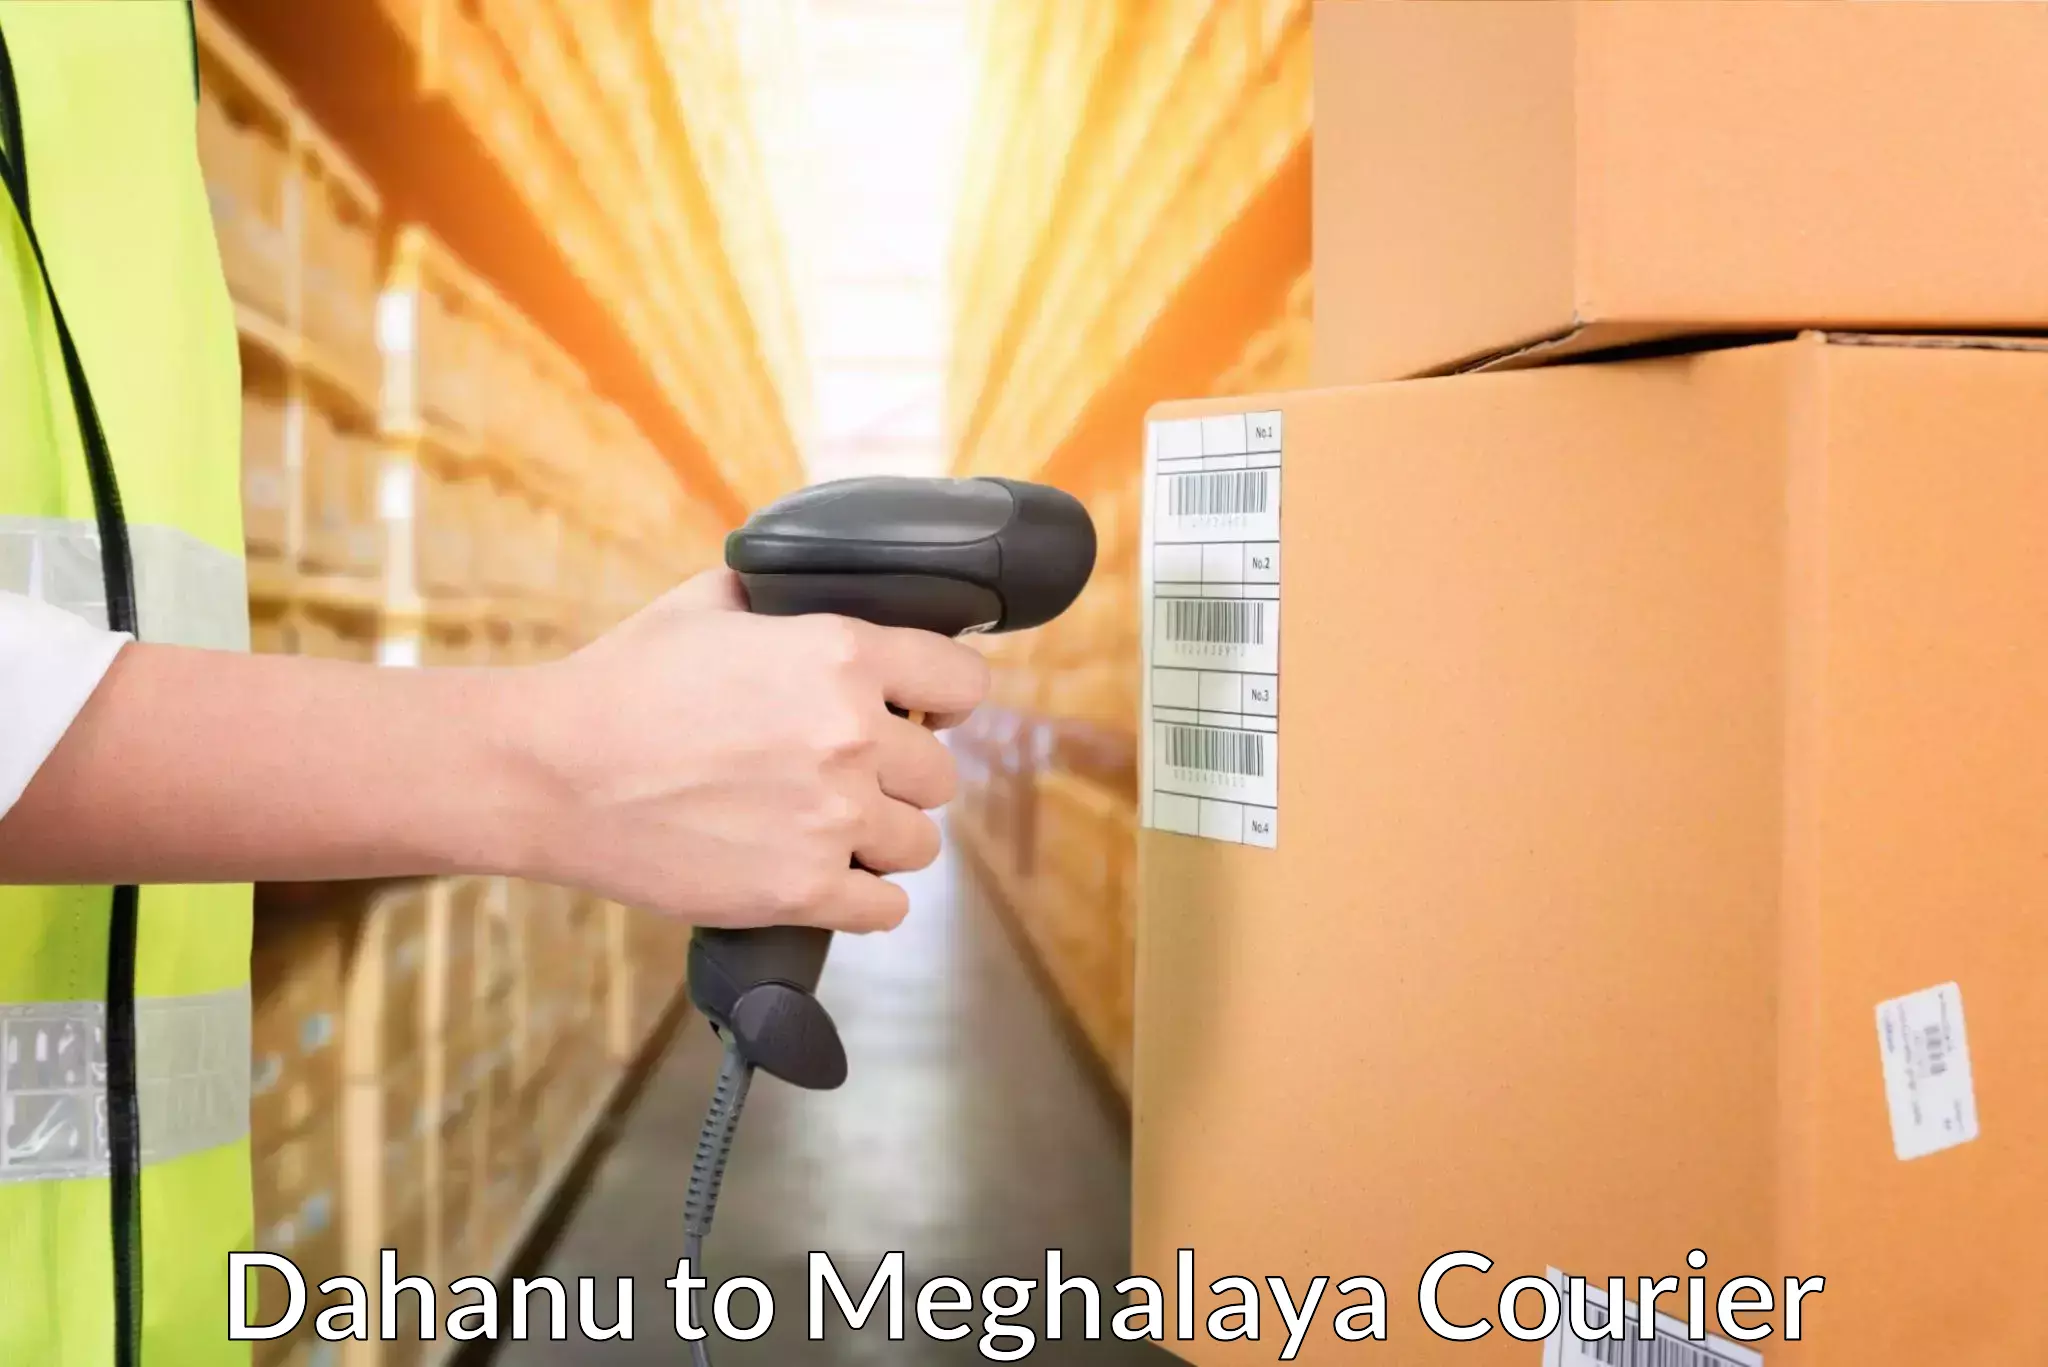 Cash on delivery service Dahanu to NIT Meghalaya